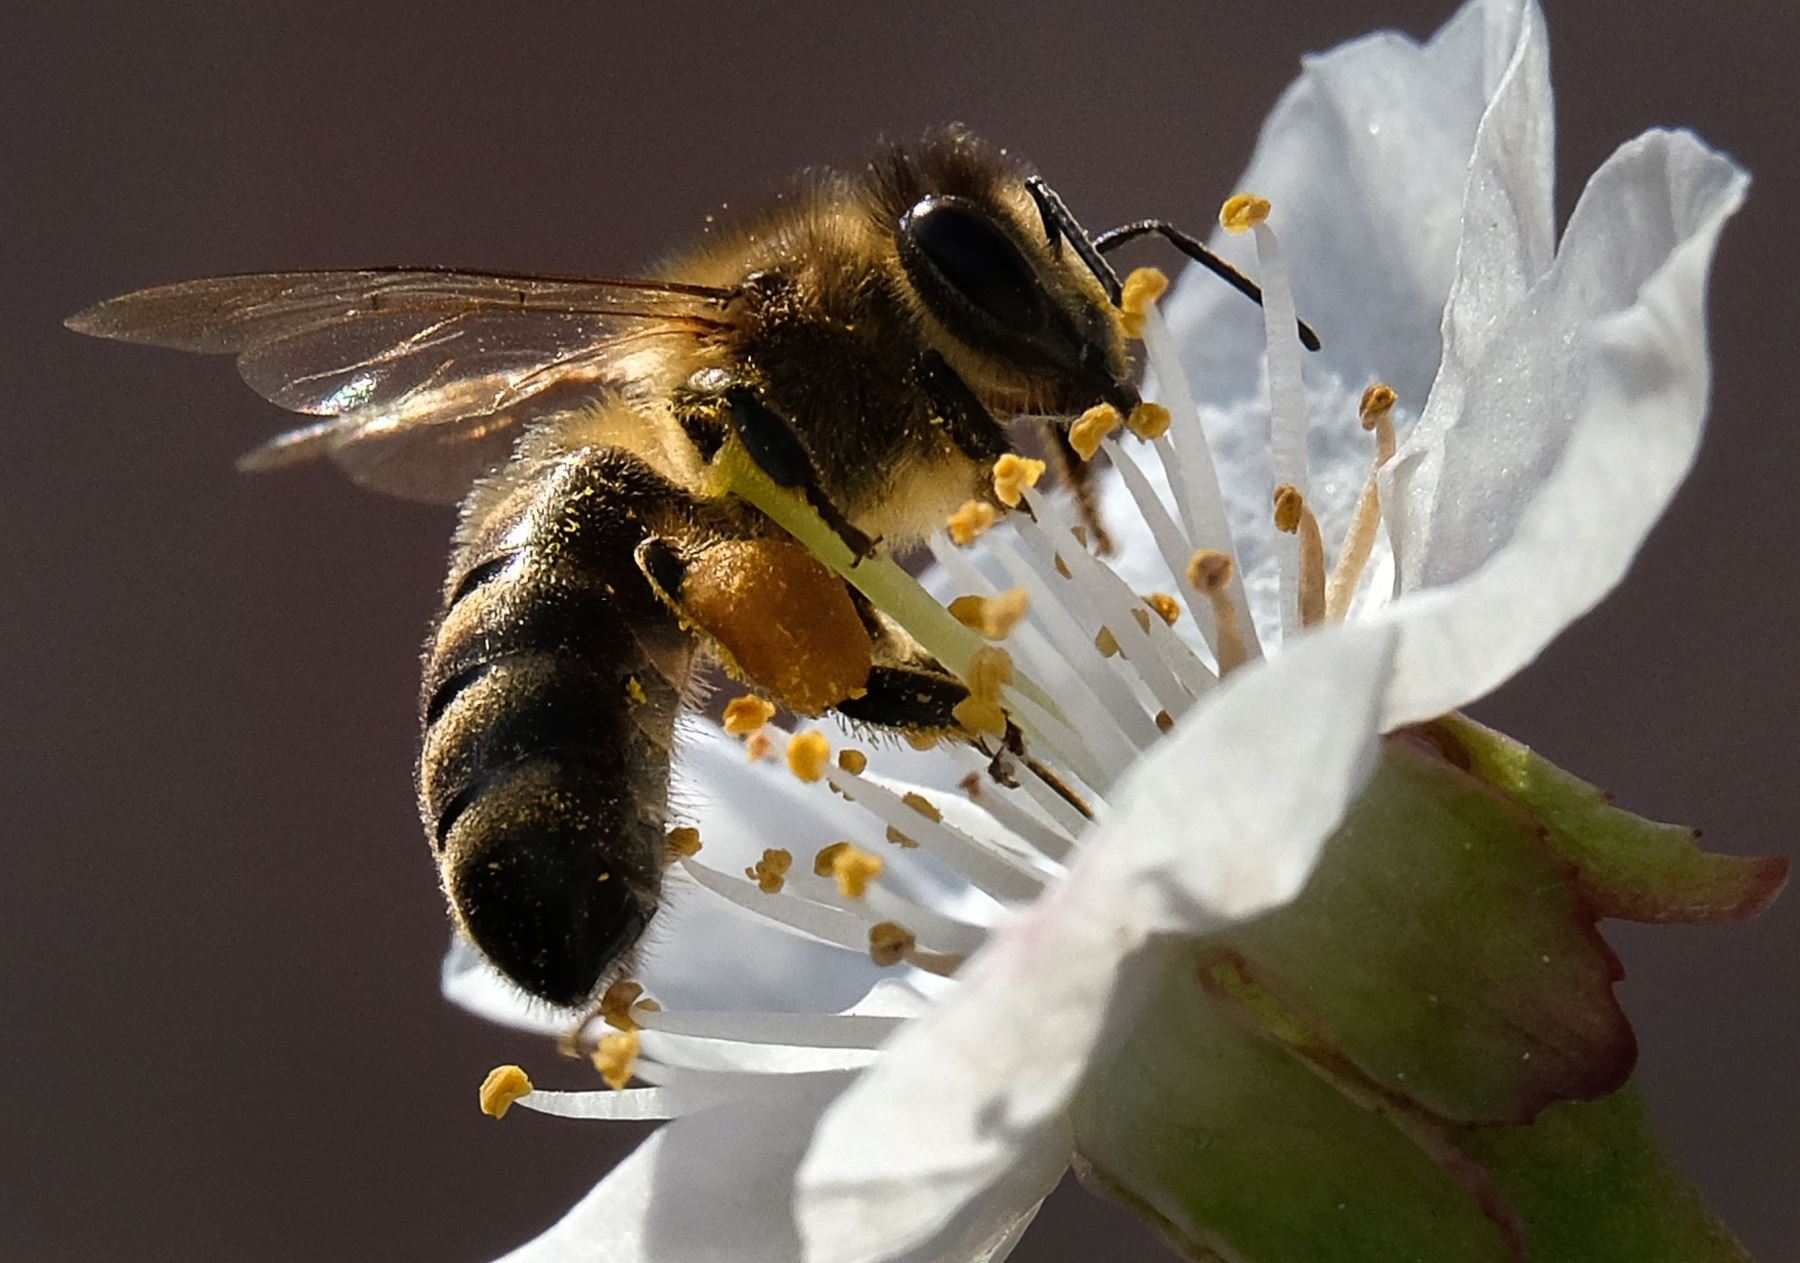 La ONU anima a proteger a las abejas para garantizar la seguridad alimentaria